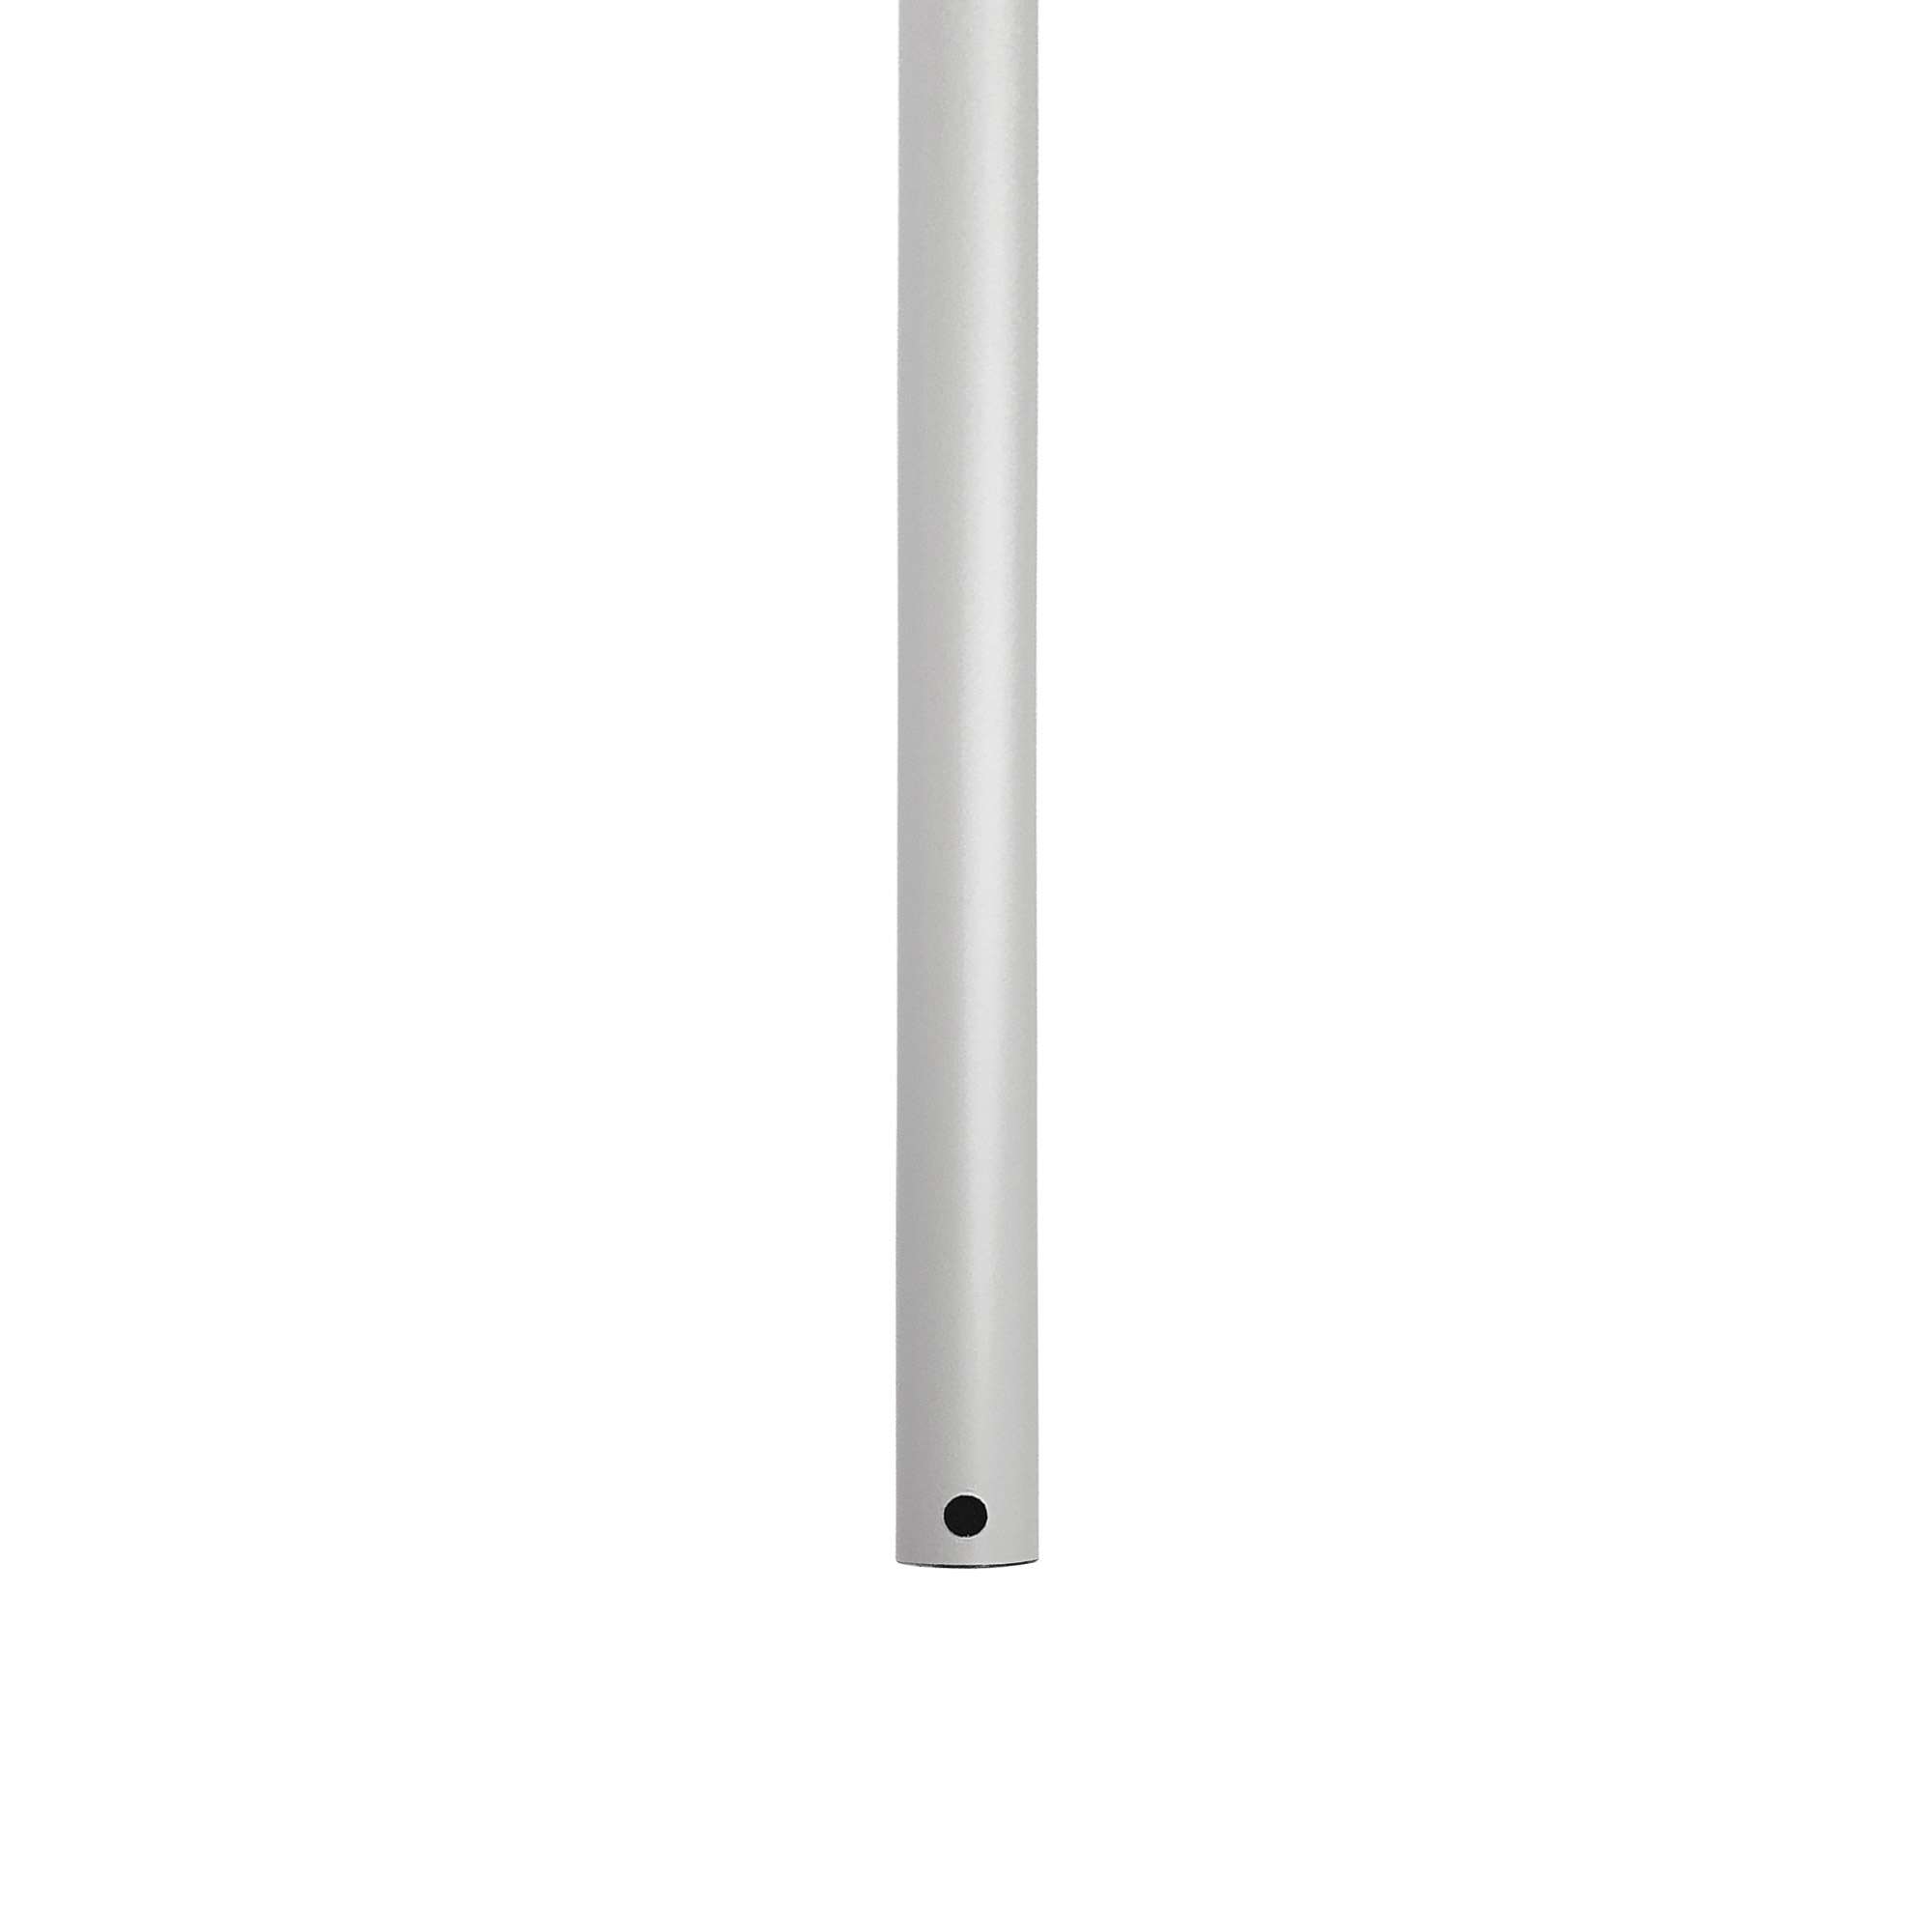 アイアンハンガーパイプ 吊りパイプ H500用 ホワイト PS-HB008-32-G141